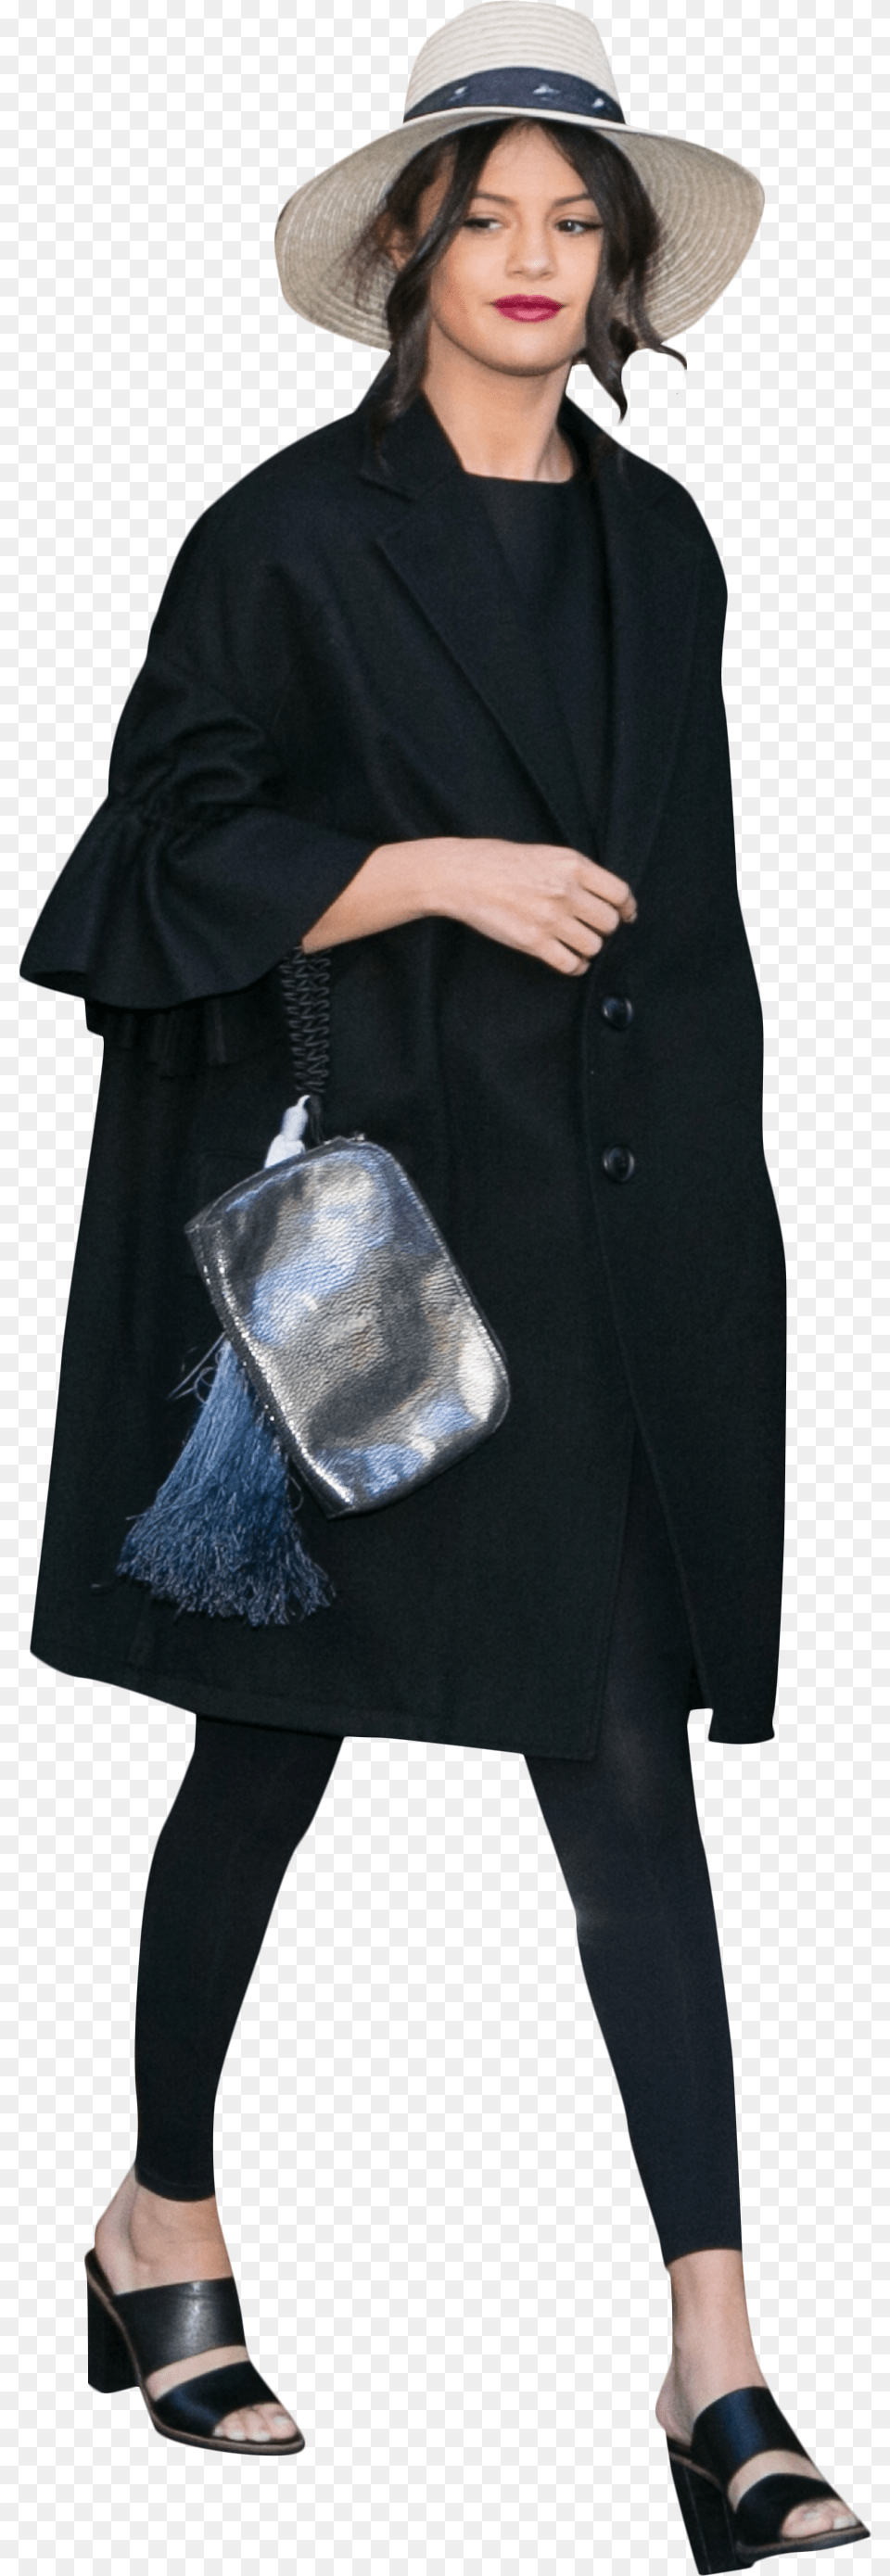 Selena Gomez Black Dress Portable Network Graphics, Accessories, Hat, Handbag, Coat Png